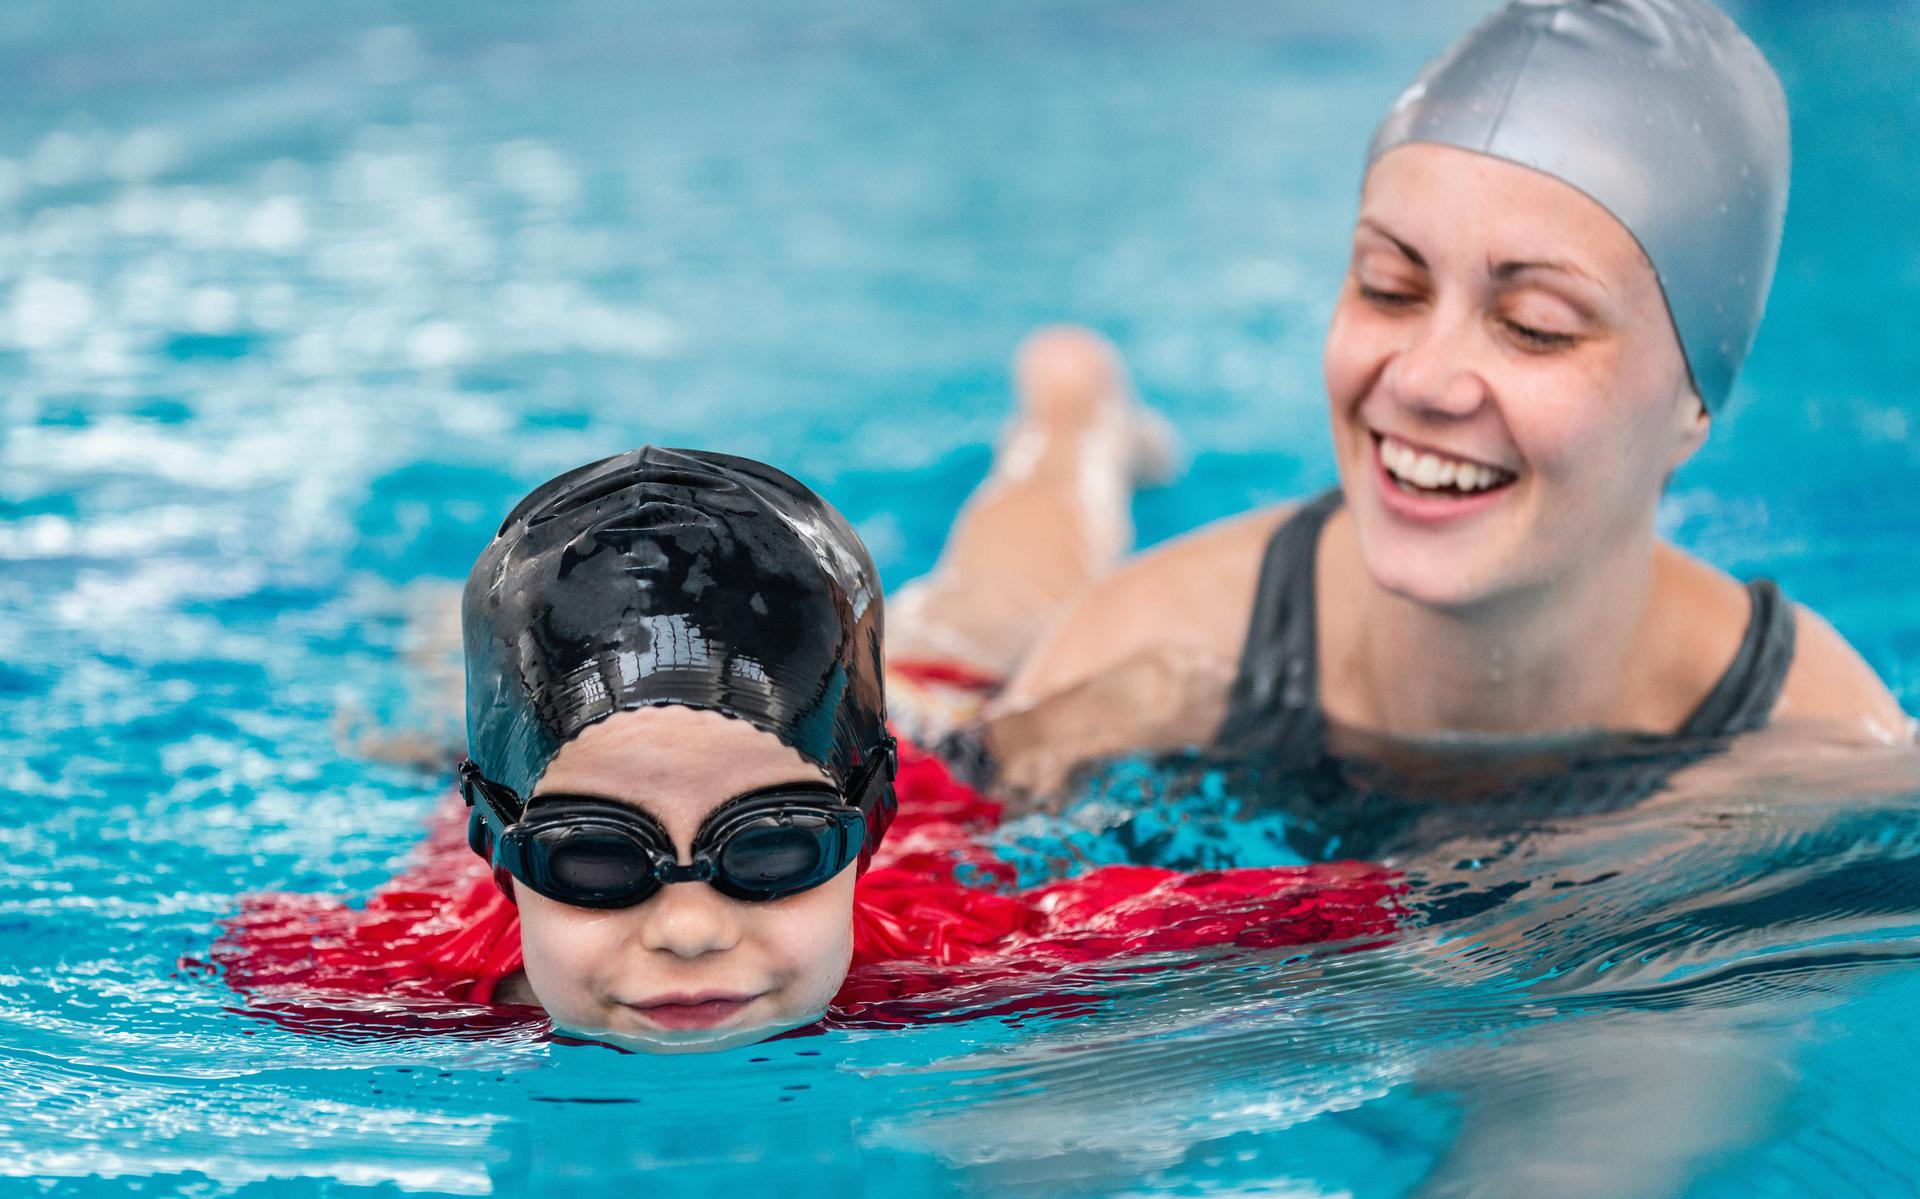 Afsnijden waarschijnlijkheid Uithoudingsvermogen Moeders verhuizen hun kinderen van officiële zwemles naar privé zwembad  vanwege strenge corona maatregelen - Leeuwarder Courant